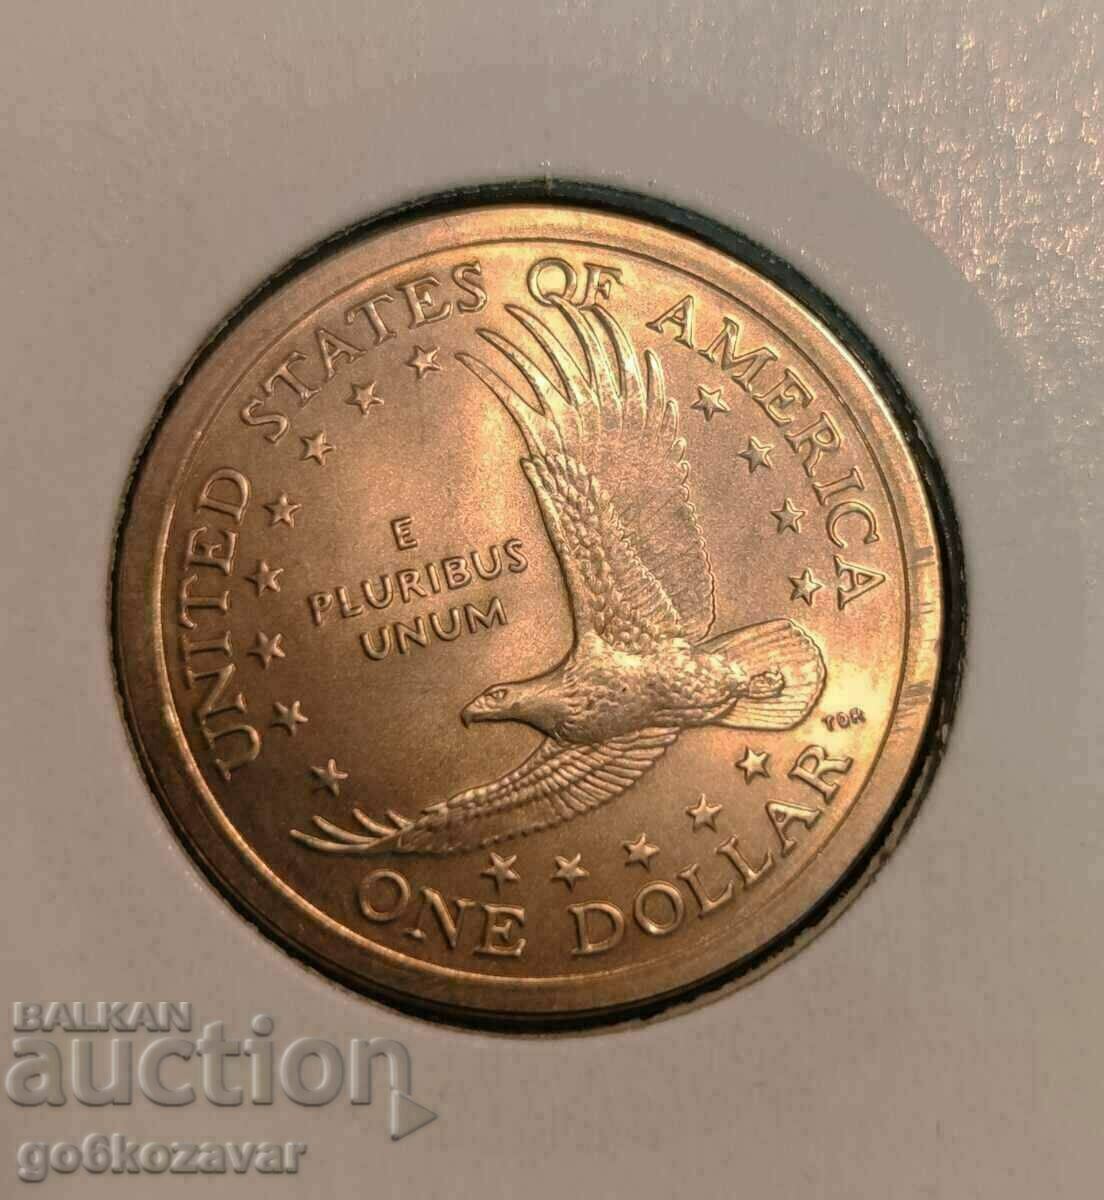 1 δολάριο ΗΠΑ 2005 UNC